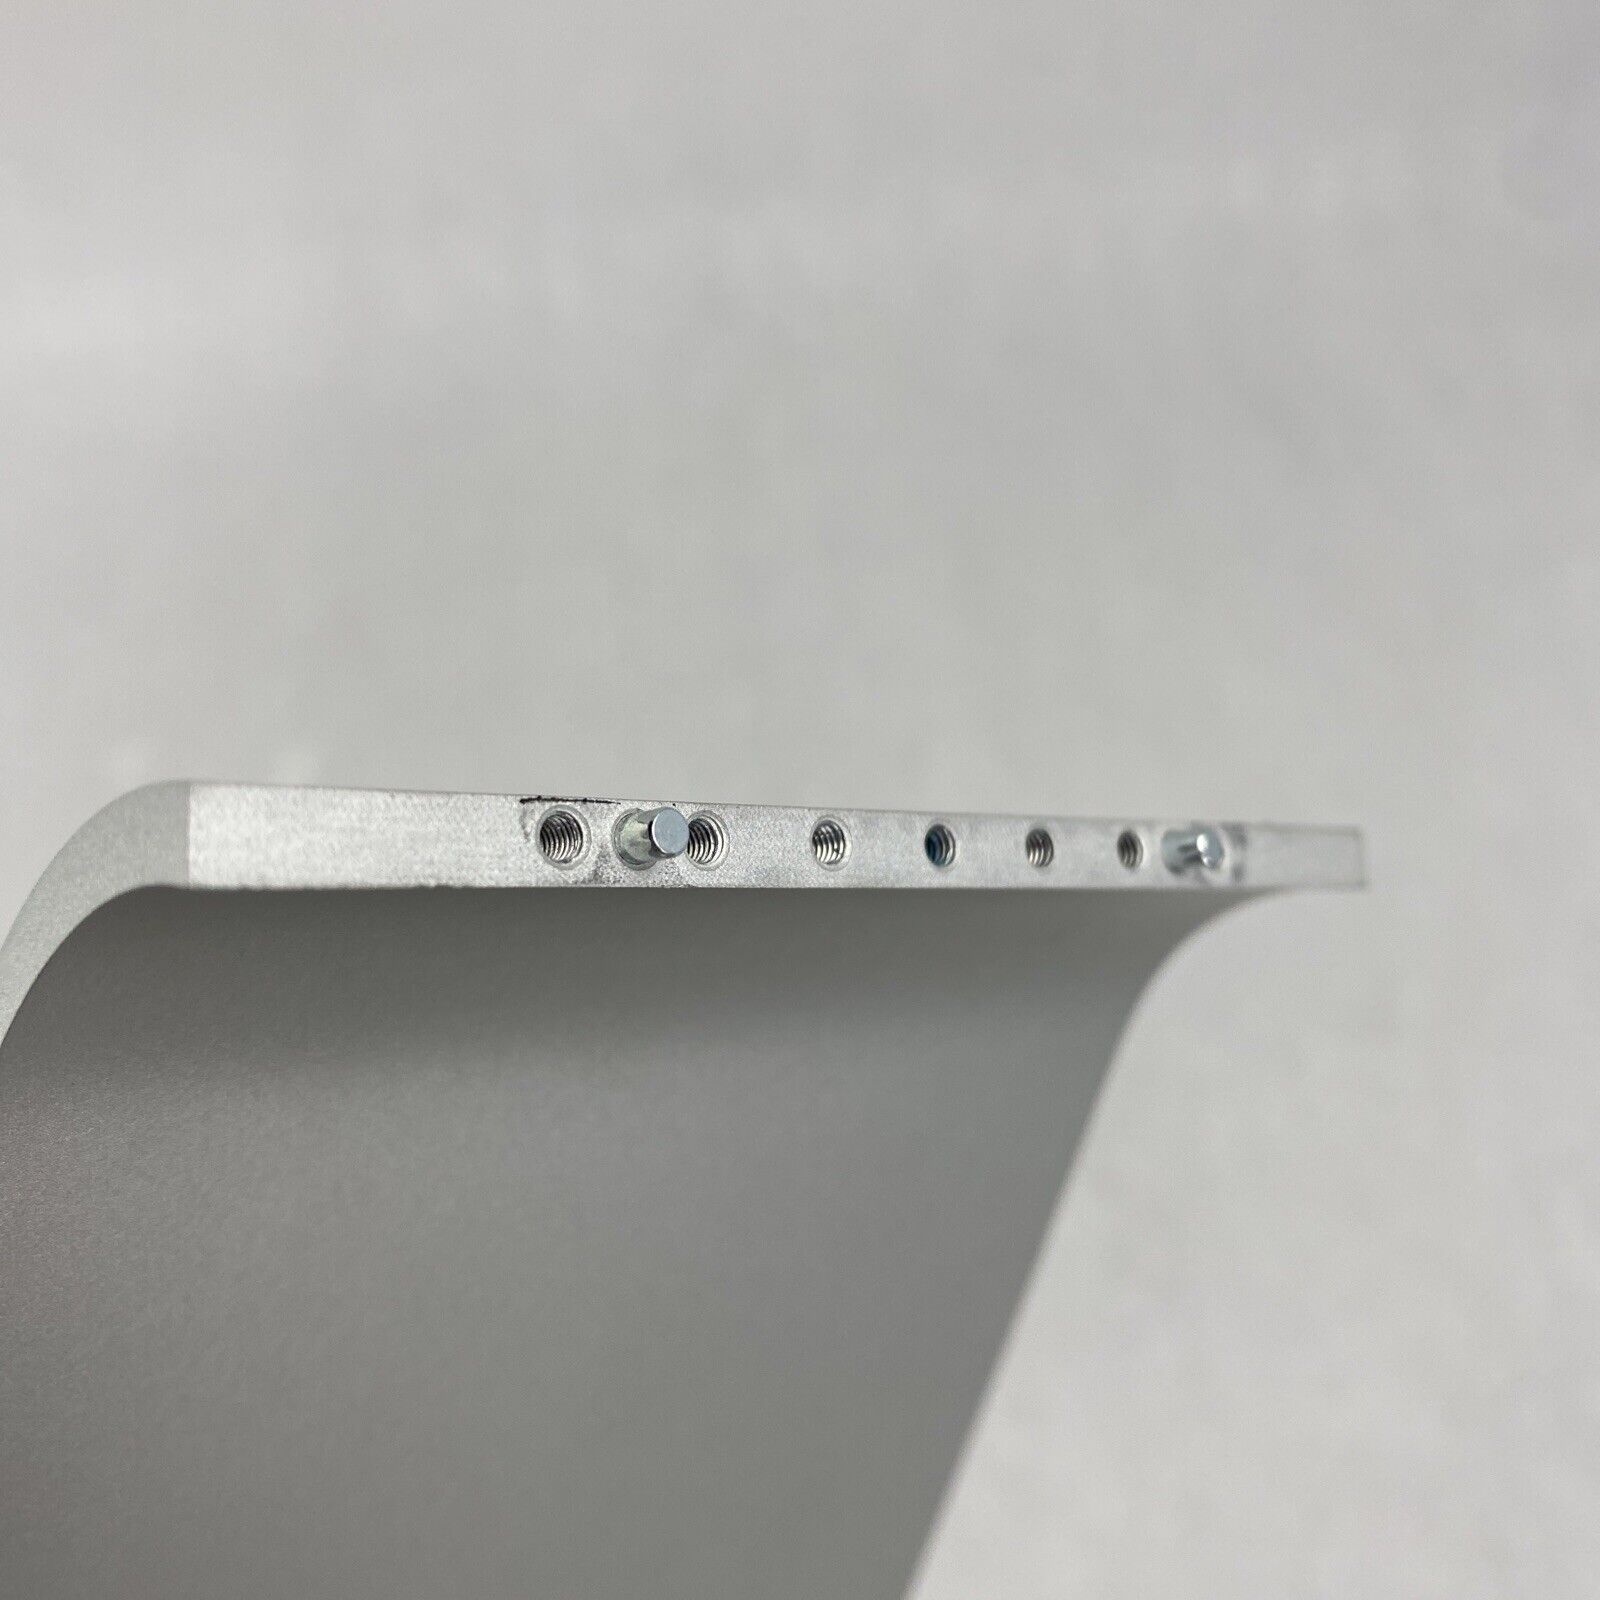 Apple iMac 21.5" A1418 Desktop Aluminum Foot Stand Grade B BASE ONLY